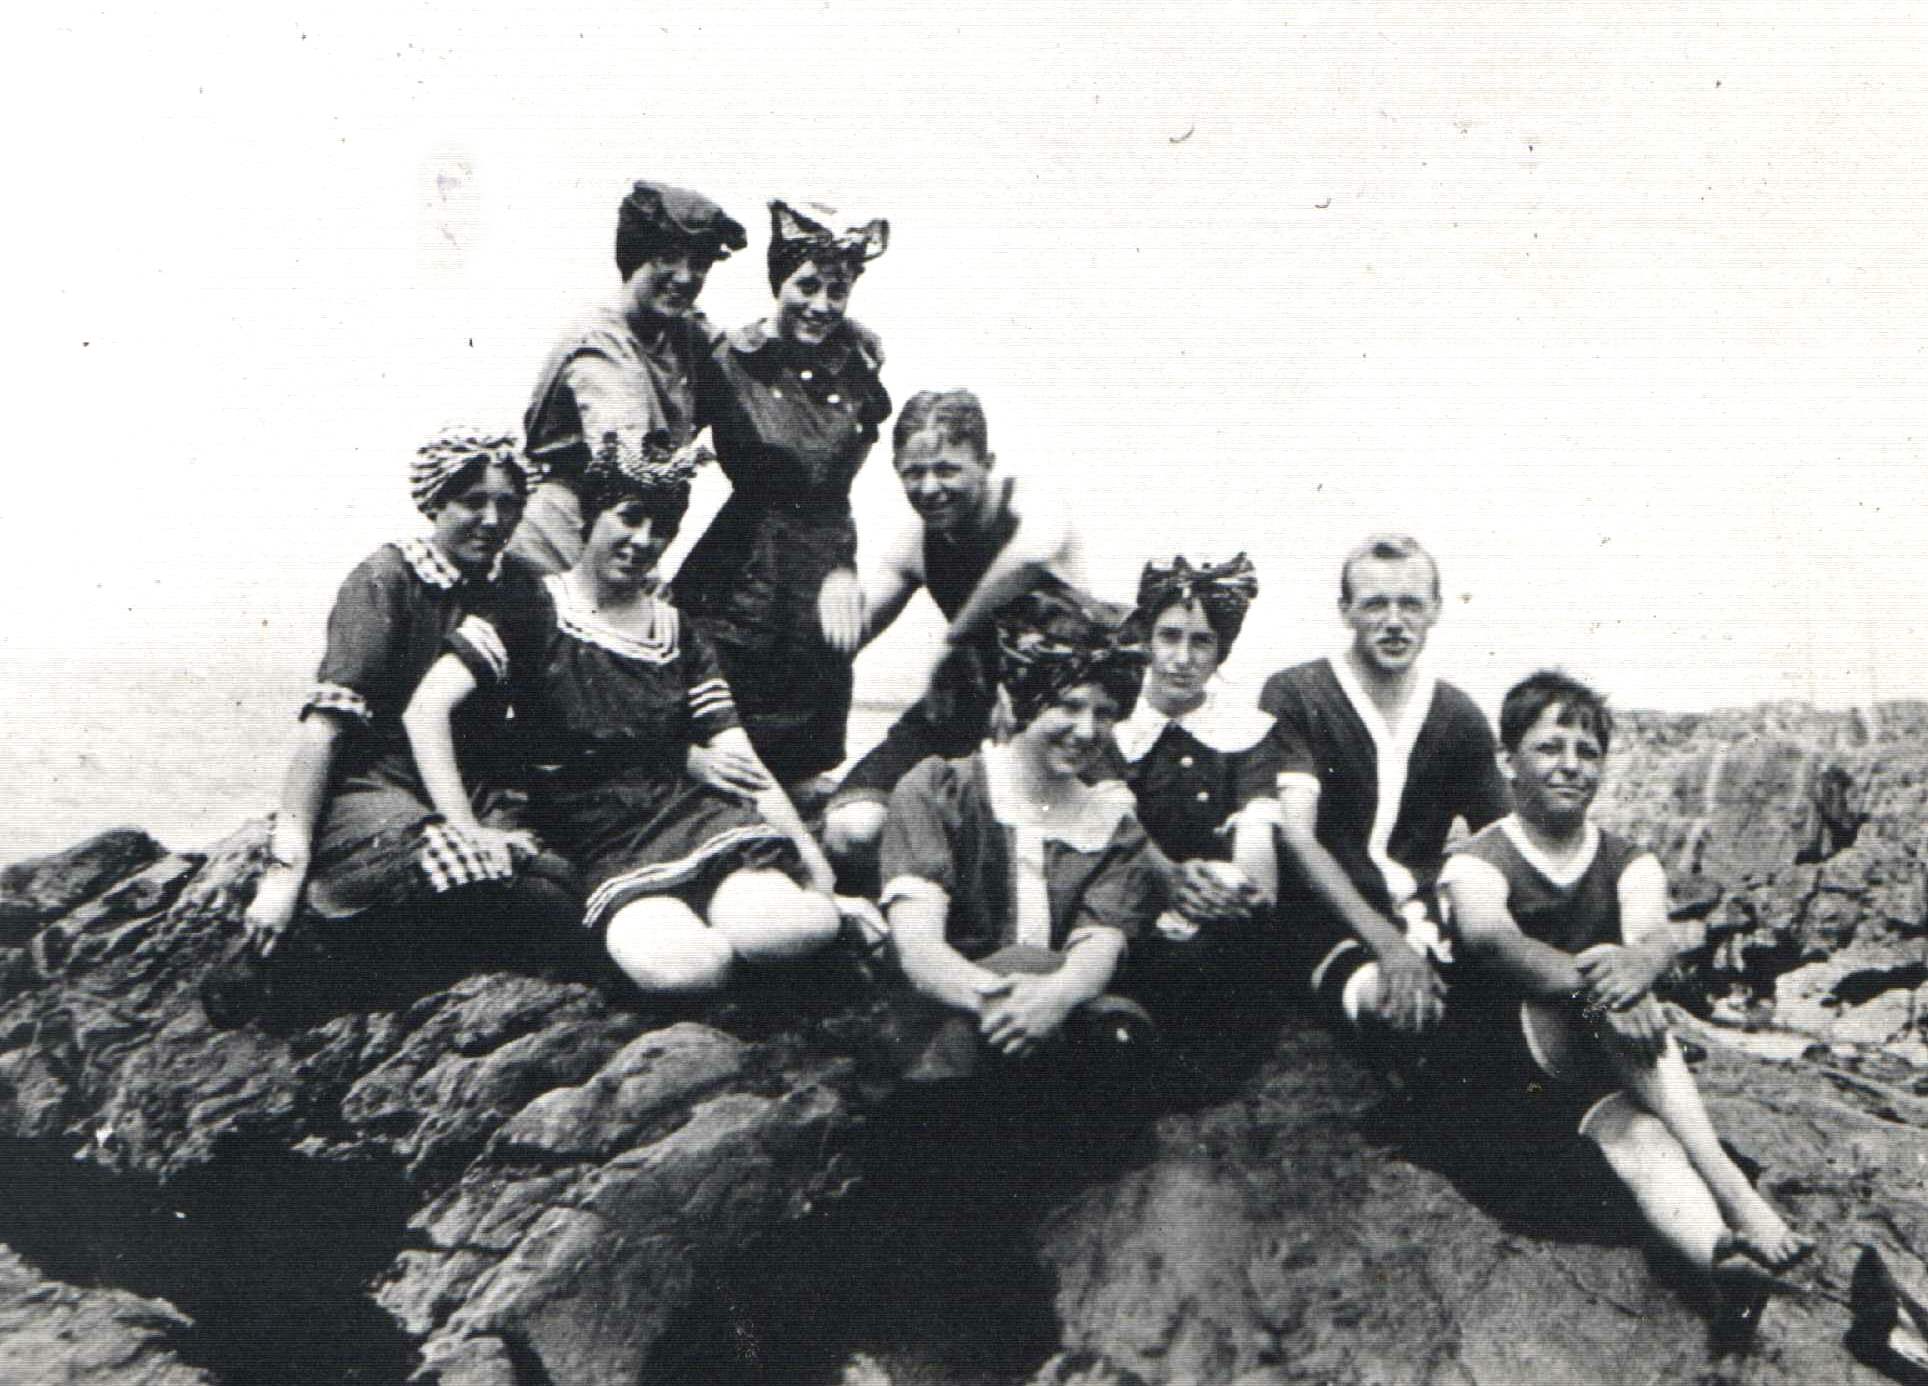 Neuf jeunes personnes posent sur un rocher au bord du fleuve, vêtus de maillots de bains du début du vingtième siècle.